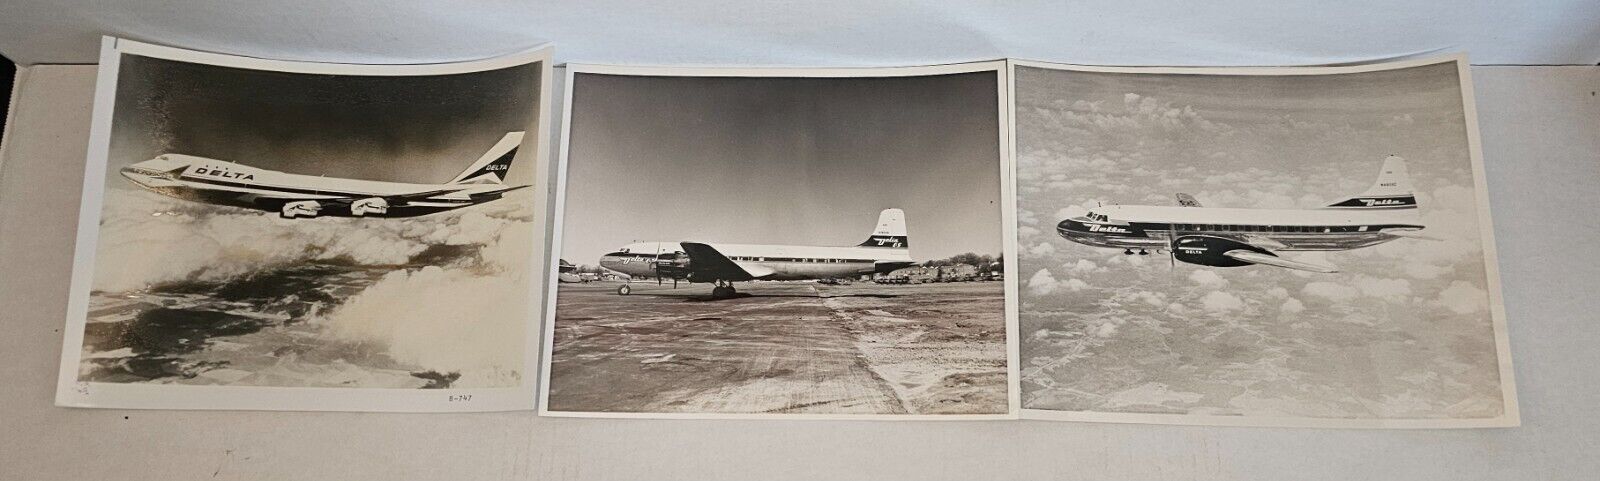 DELTA AIR LINES Vintage Plane Photographs Original 8x10 Lot of 3 Convair Douglas